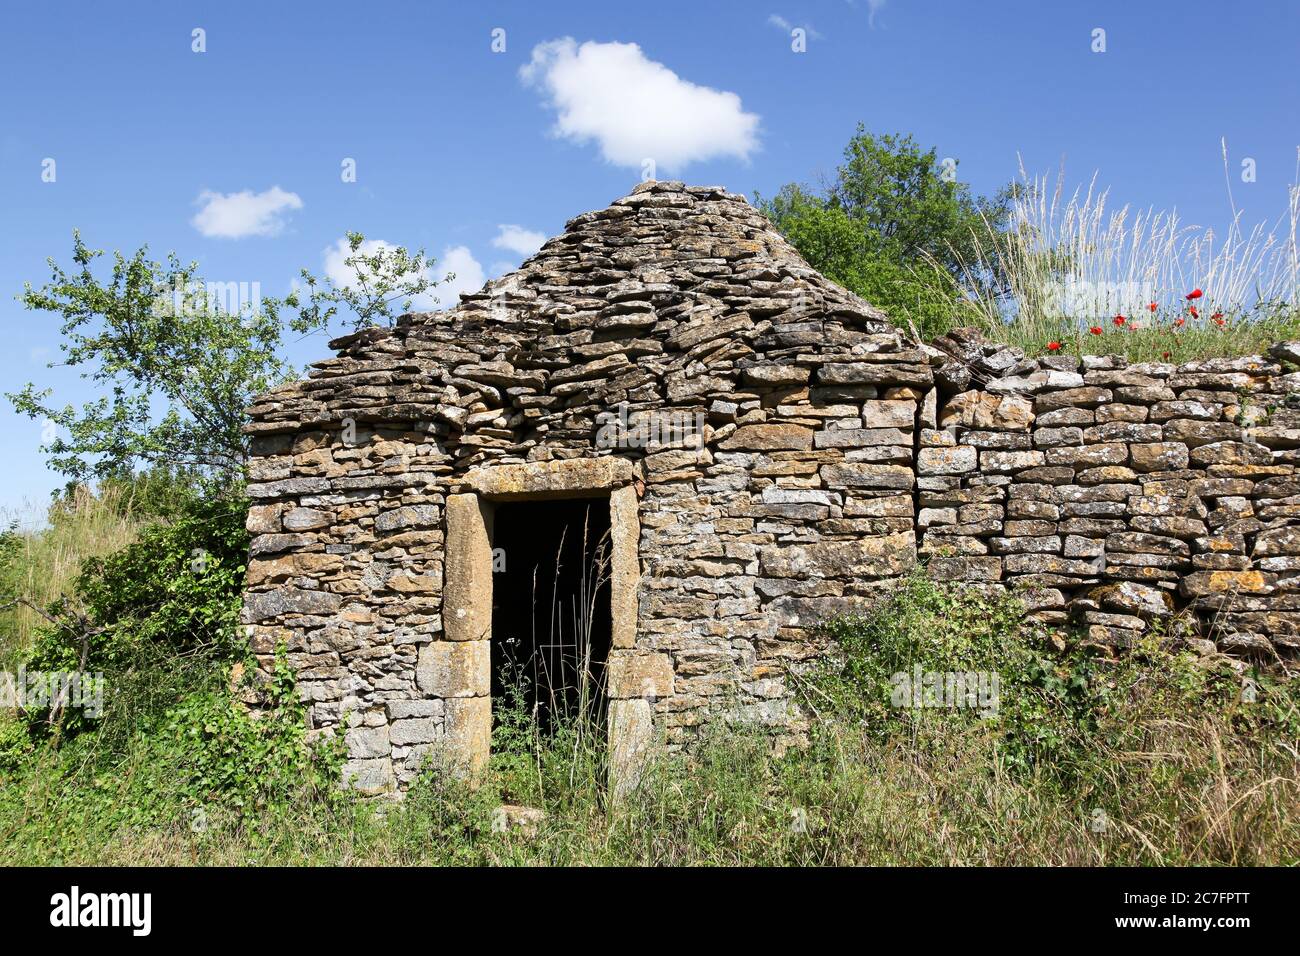 Ancienne et typique cabane en pierre appelée cadole en langue française dans les vignobles du Beaujolais, France Banque D'Images